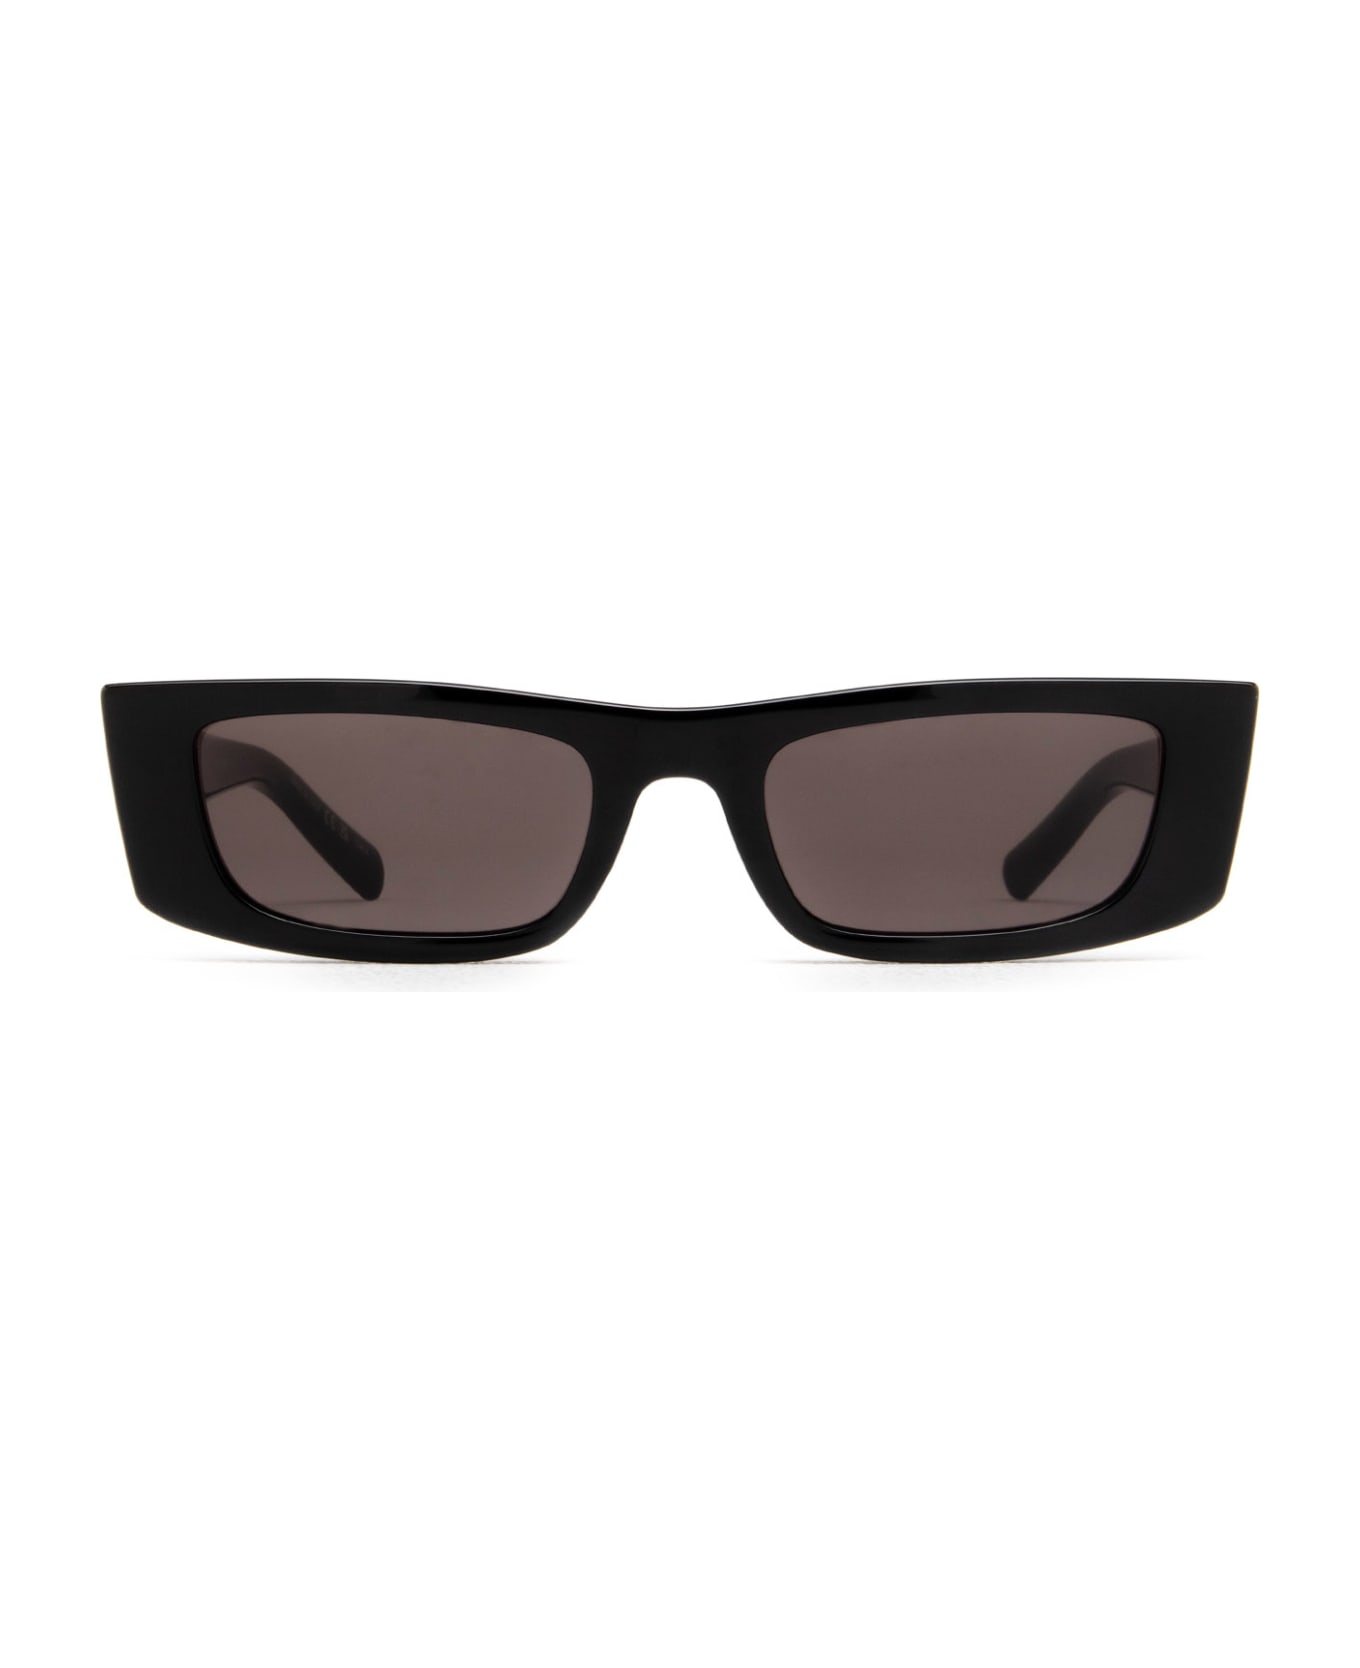 Saint Laurent Eyewear Sl 553 Black Sunglasses - Black